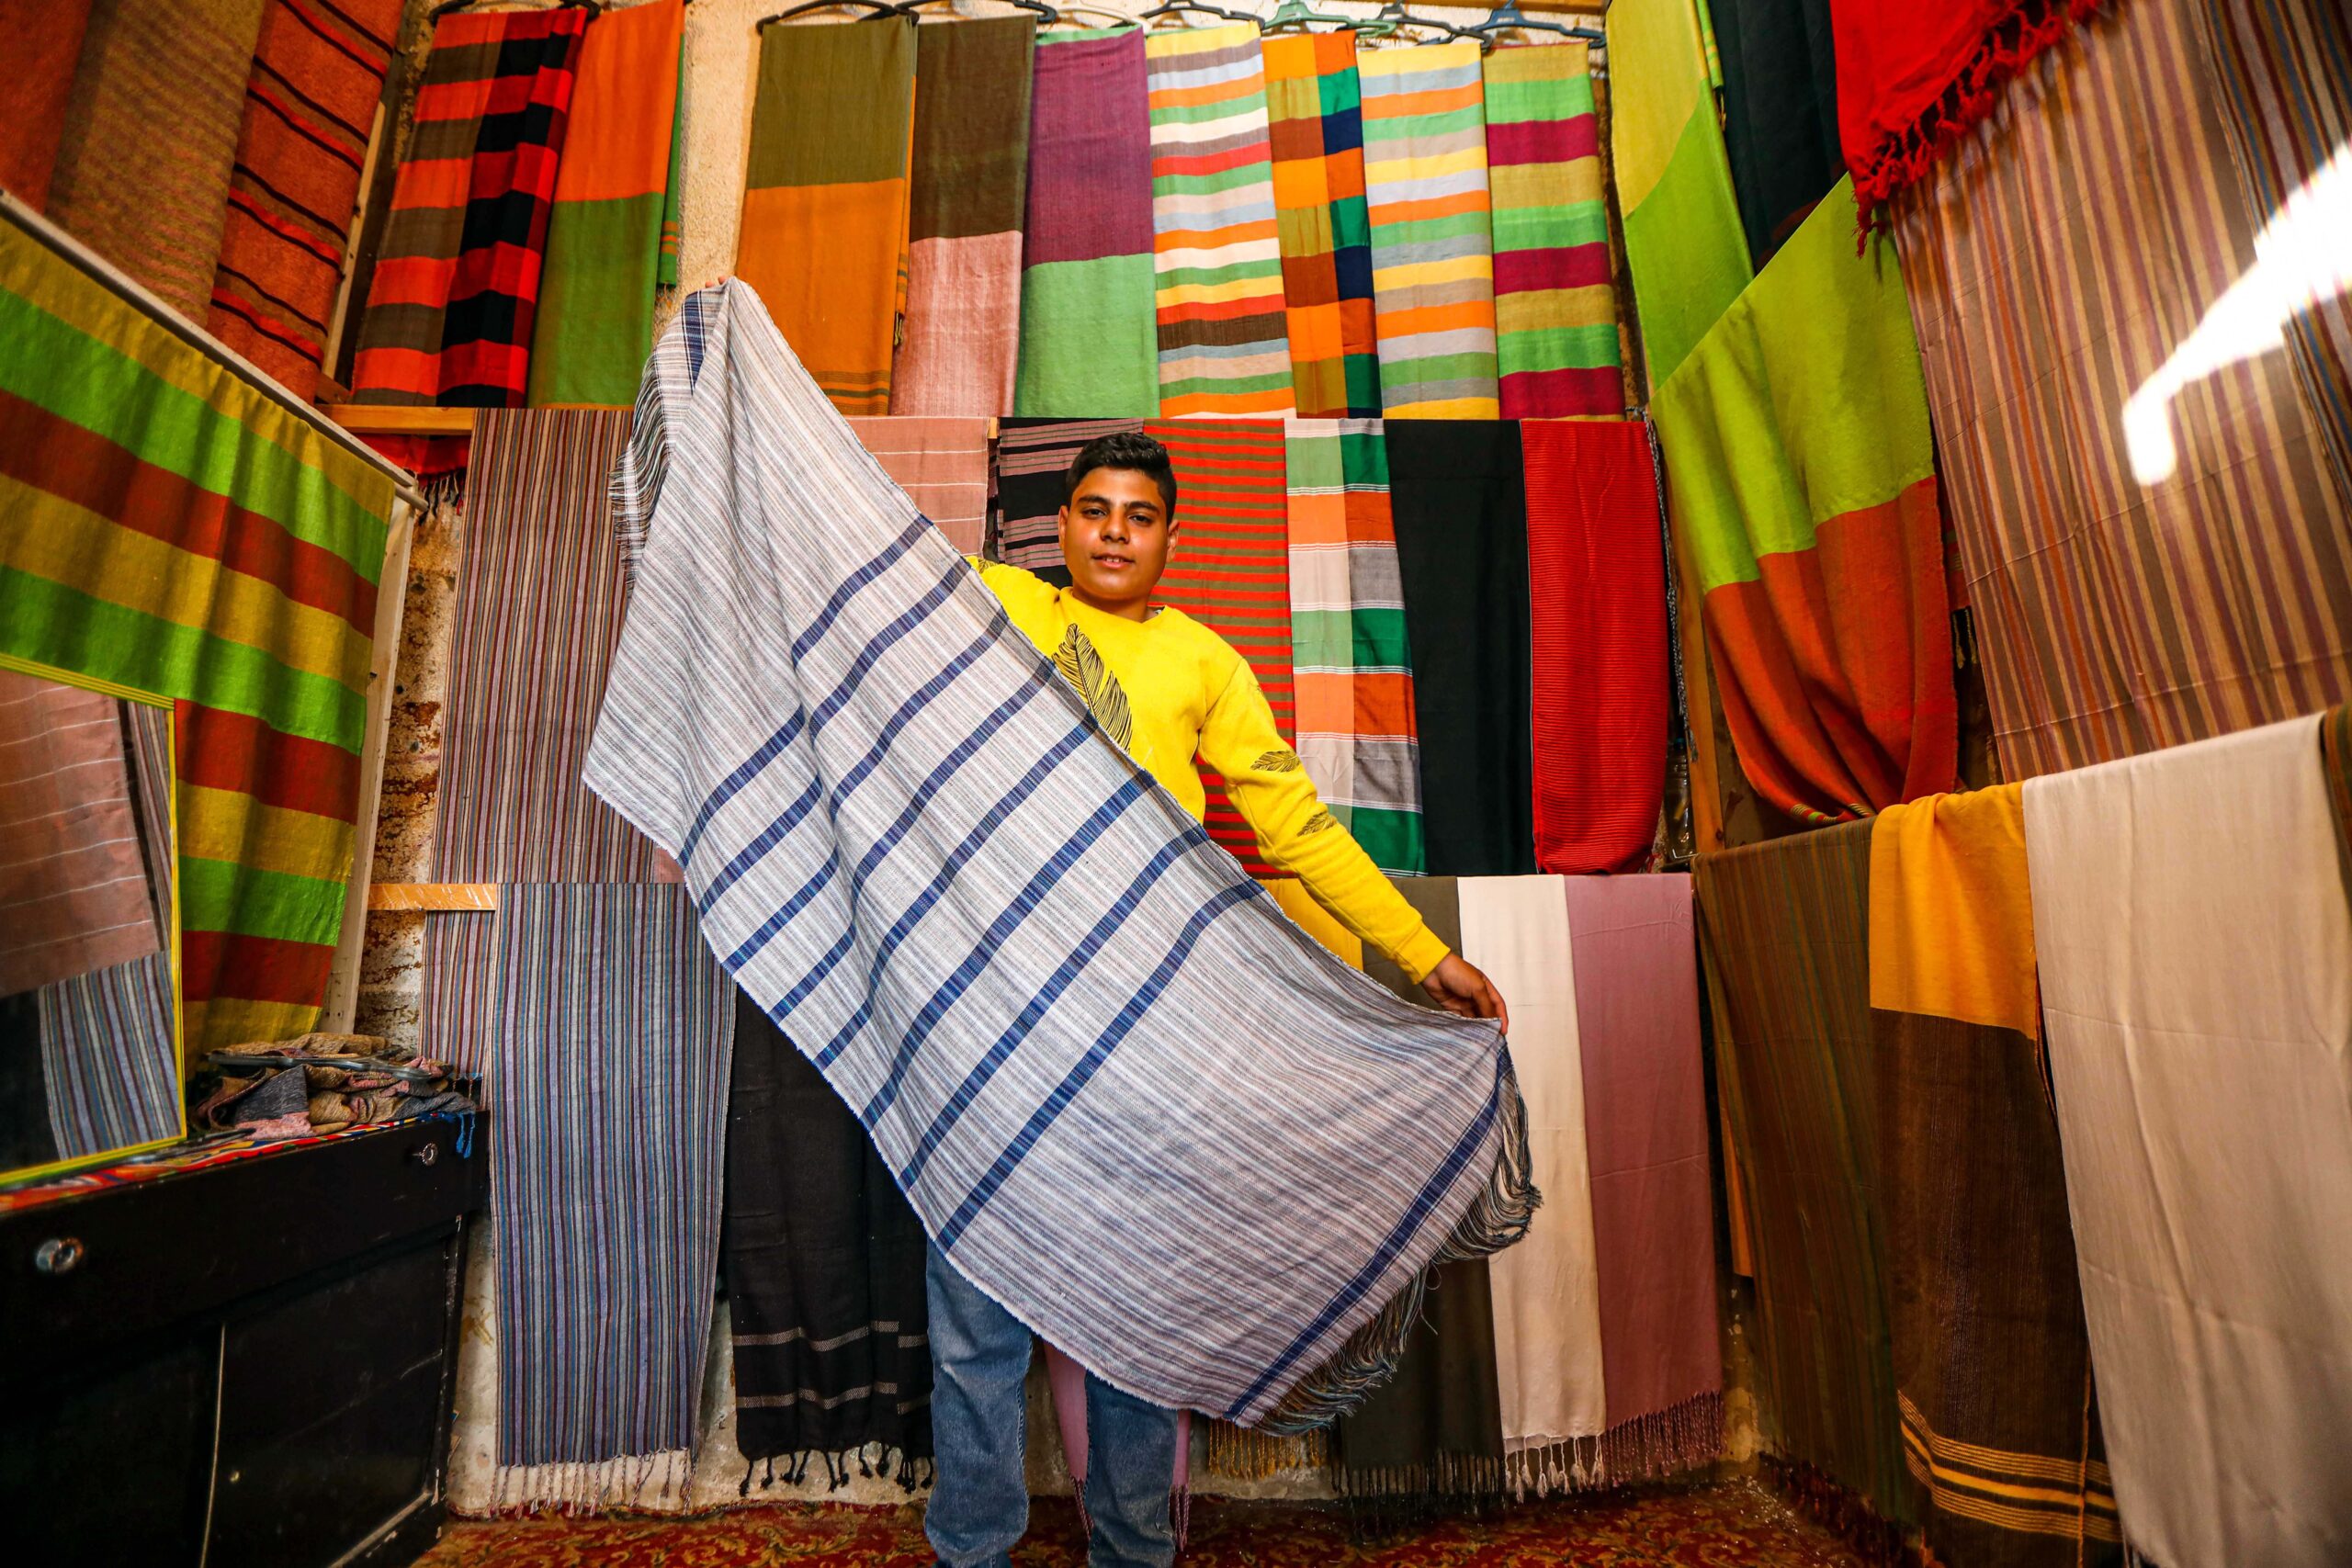 'ผ้าทอมือ' เอกลักษณ์ชาวบ้านนูเบียในอียิปต์